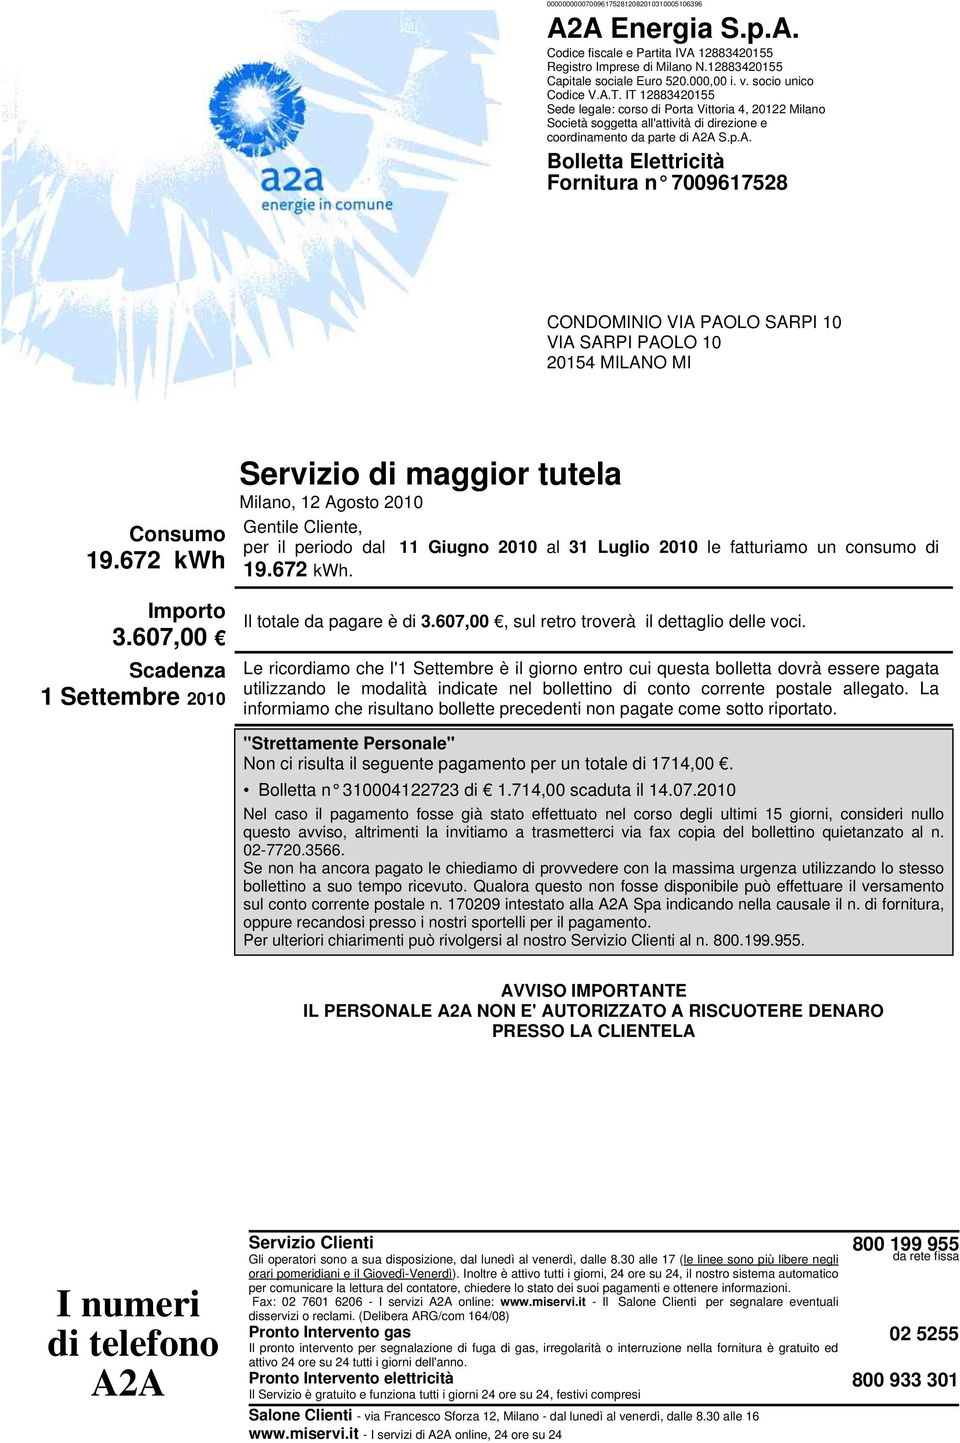 672 kwh Servizio di maggior tutela Milano, 12 Agosto 2010 Gentile Cliente, per il periodo dal 19.672 kwh. 11 Giugno 2010 al 31 Luglio 2010 le fatturiamo un consumo di Importo 3.